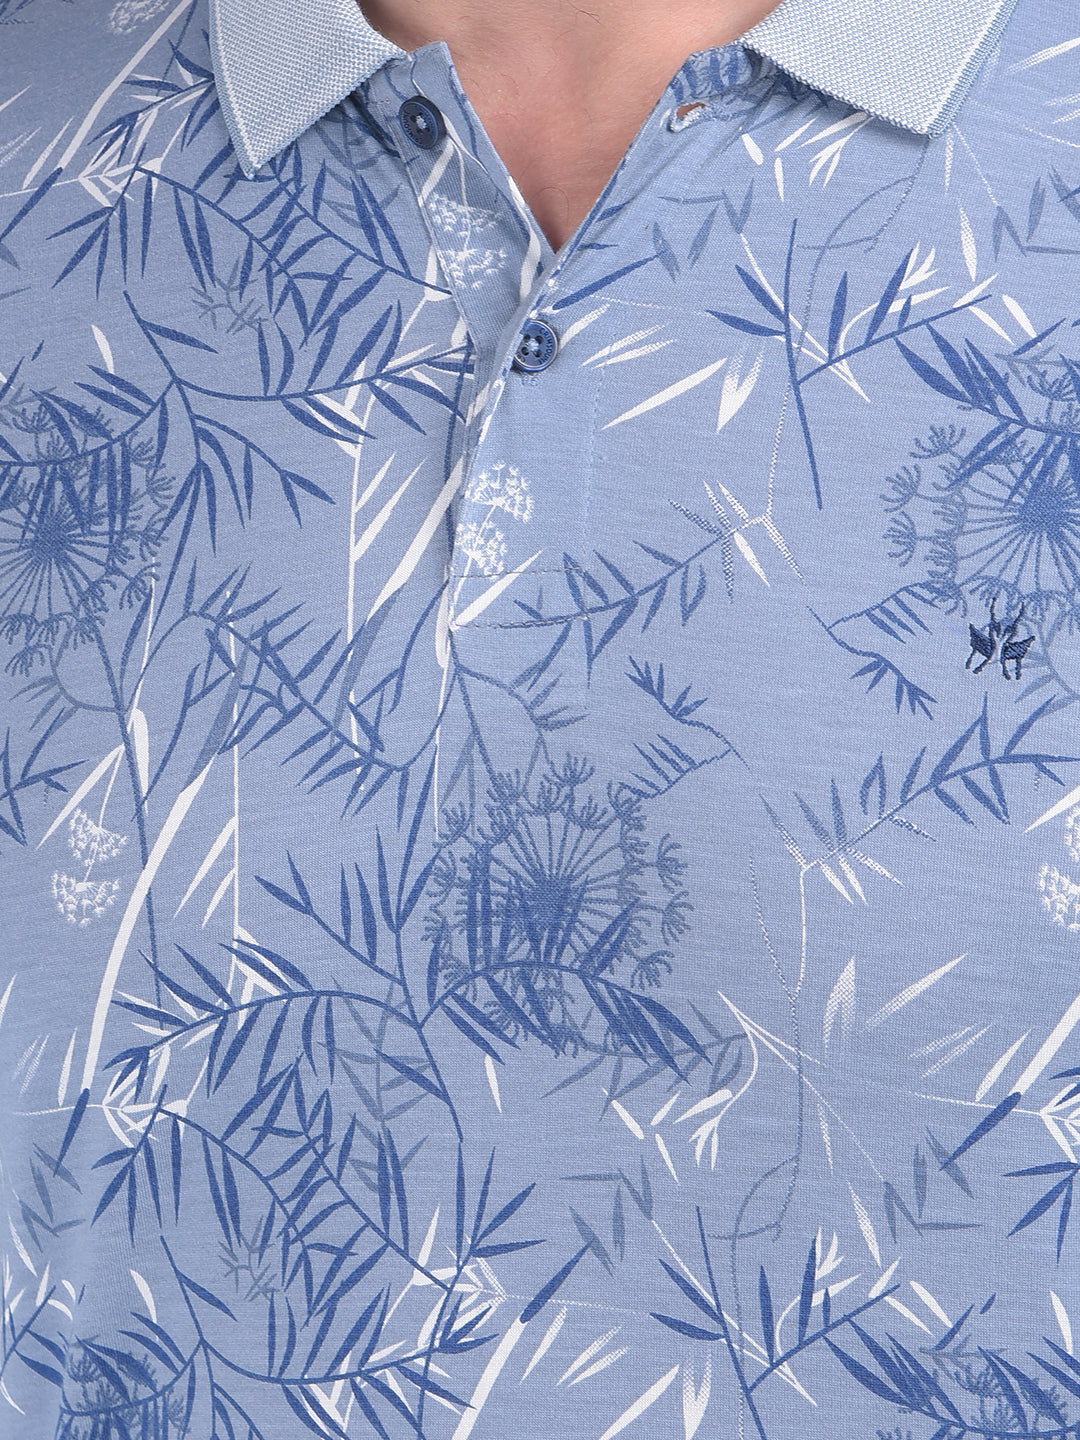 Blue Floral Print T-Shirt-Men T-Shirts-Crimsoune Club